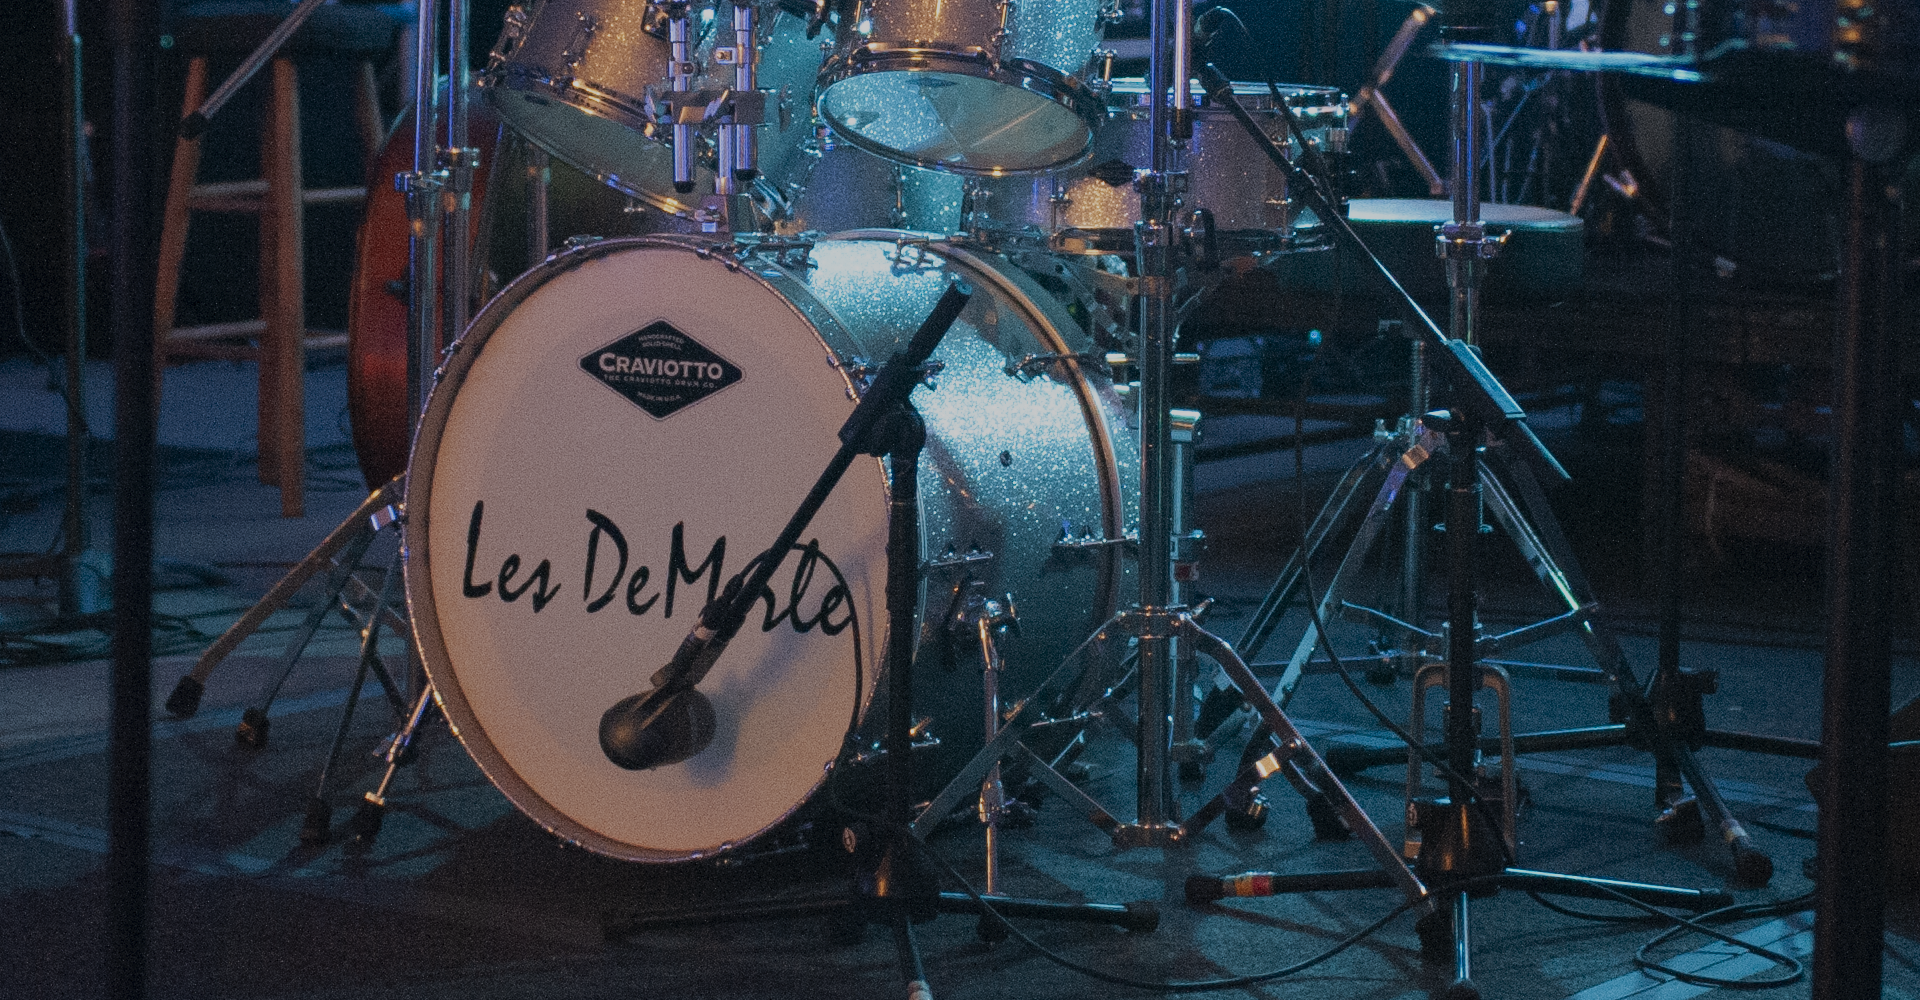 Les DeMerle Drums